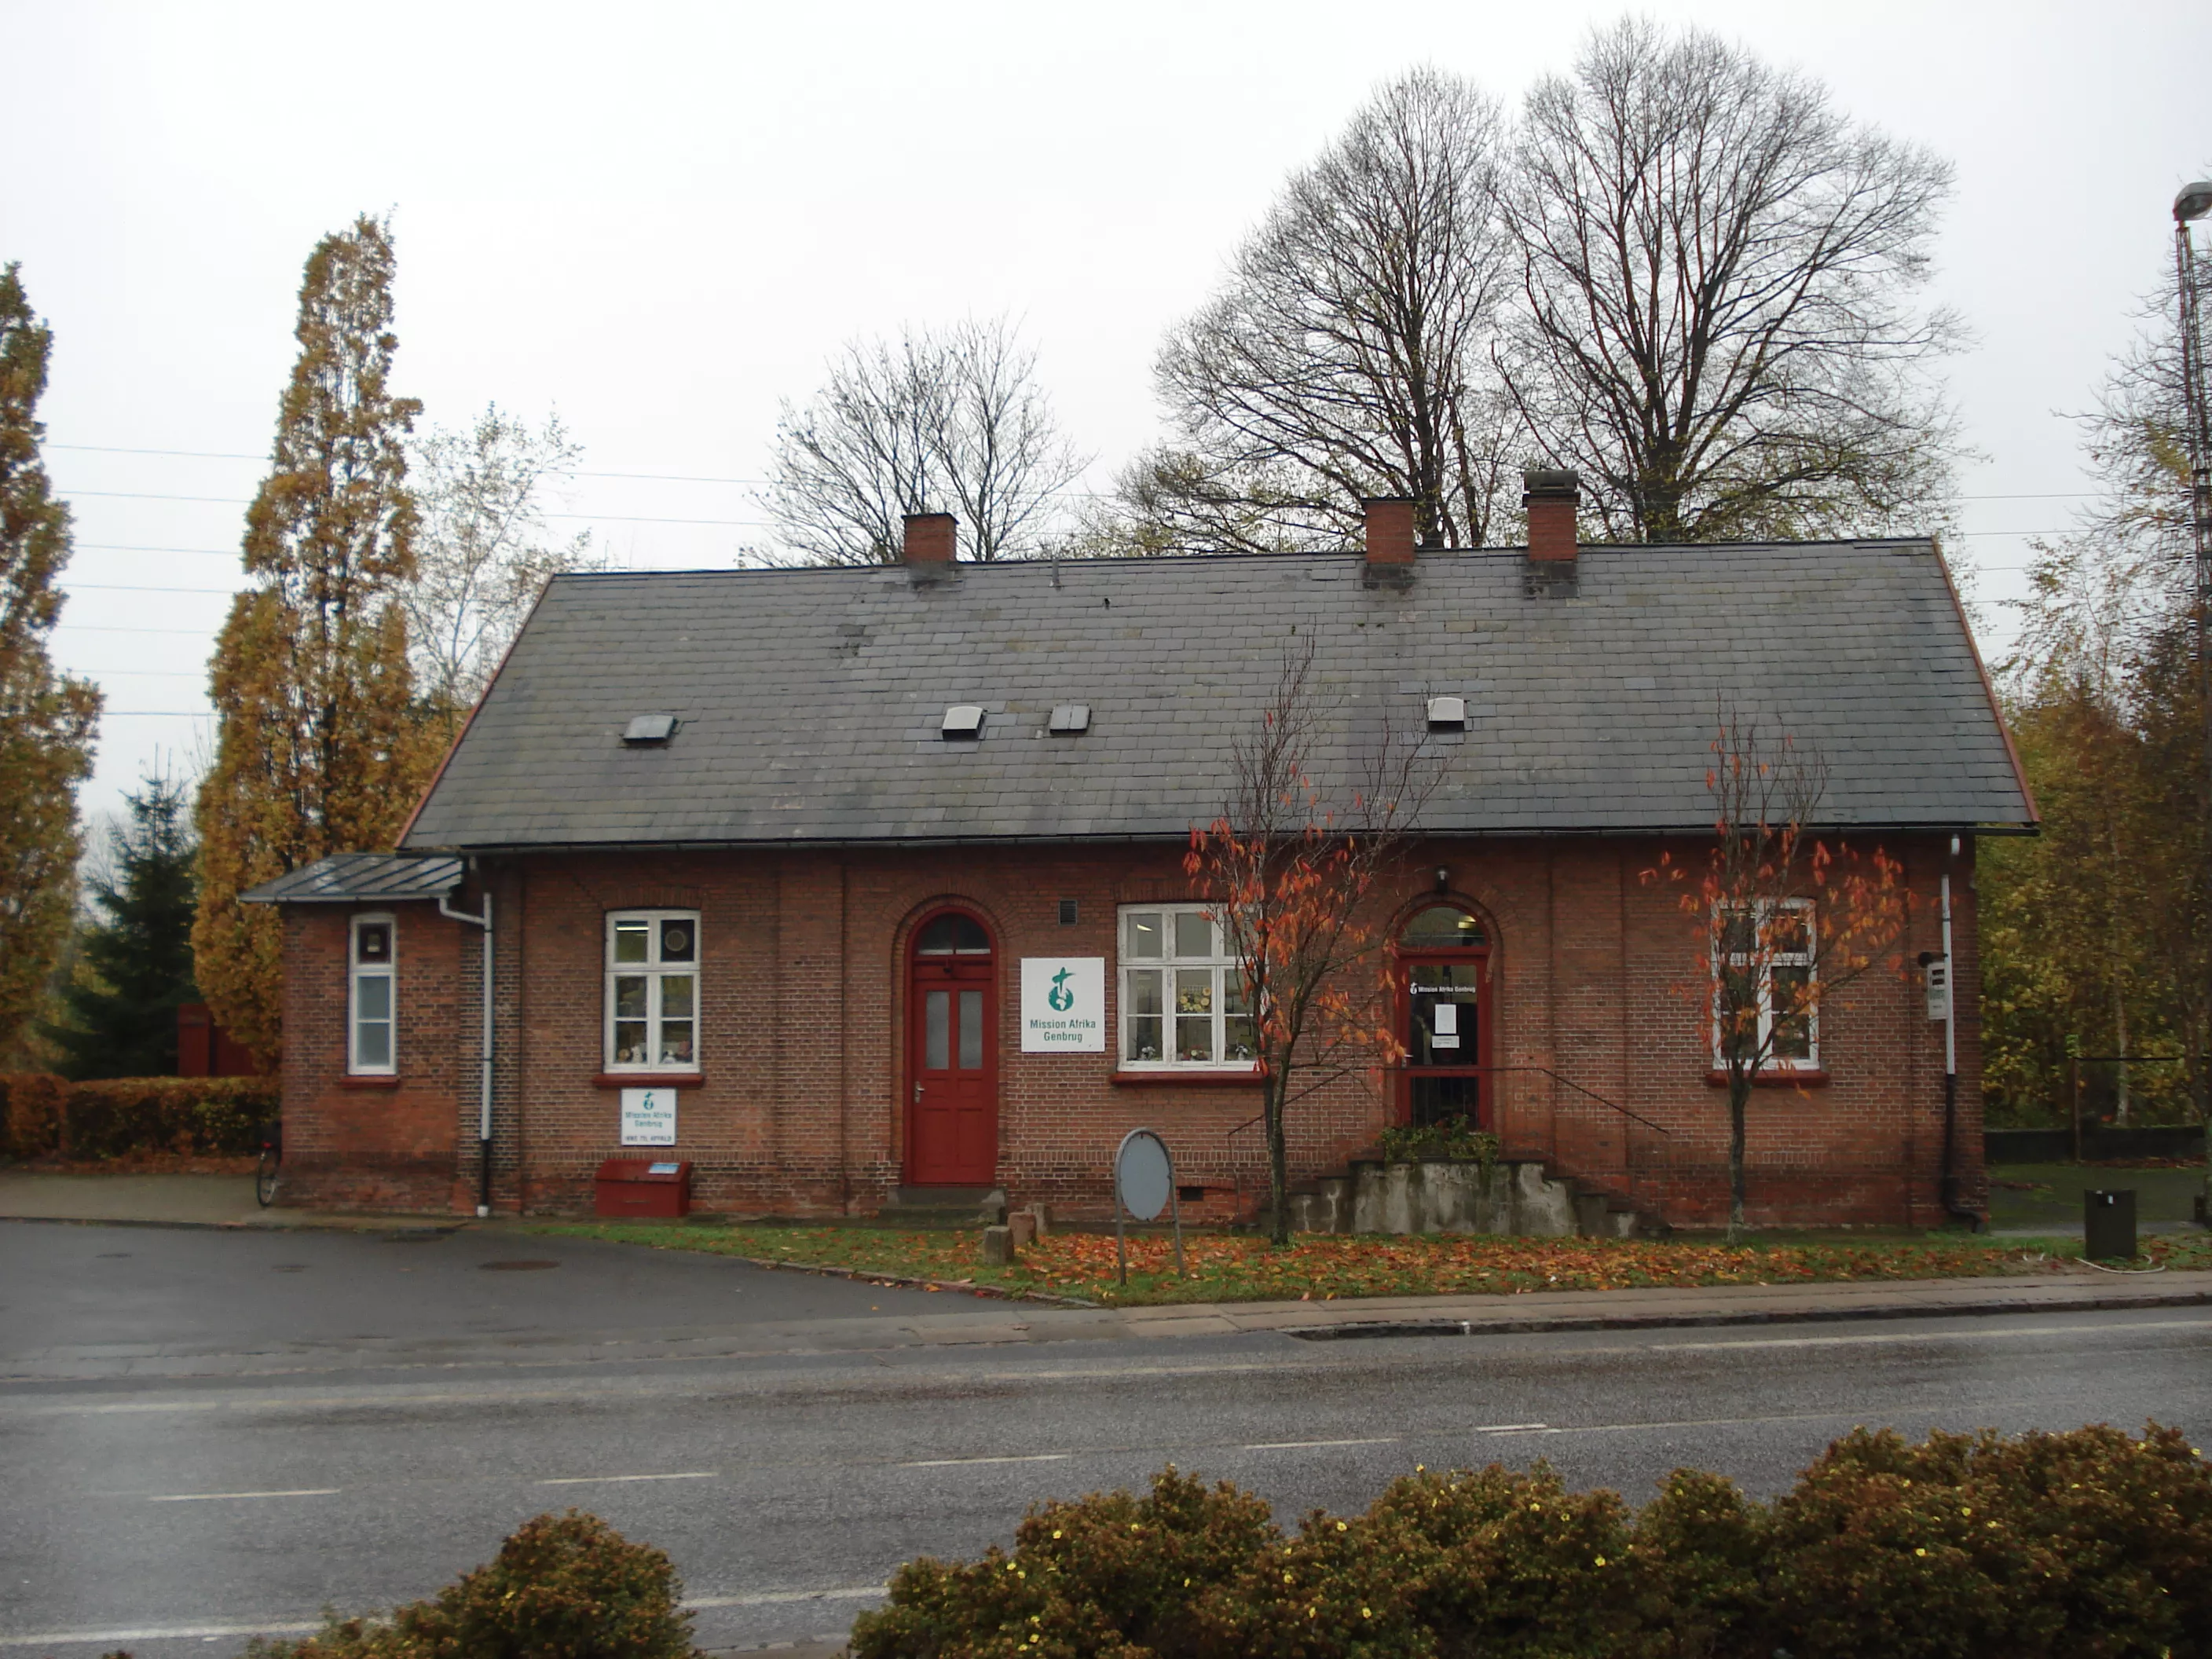 Billede af Knarreborg Station.